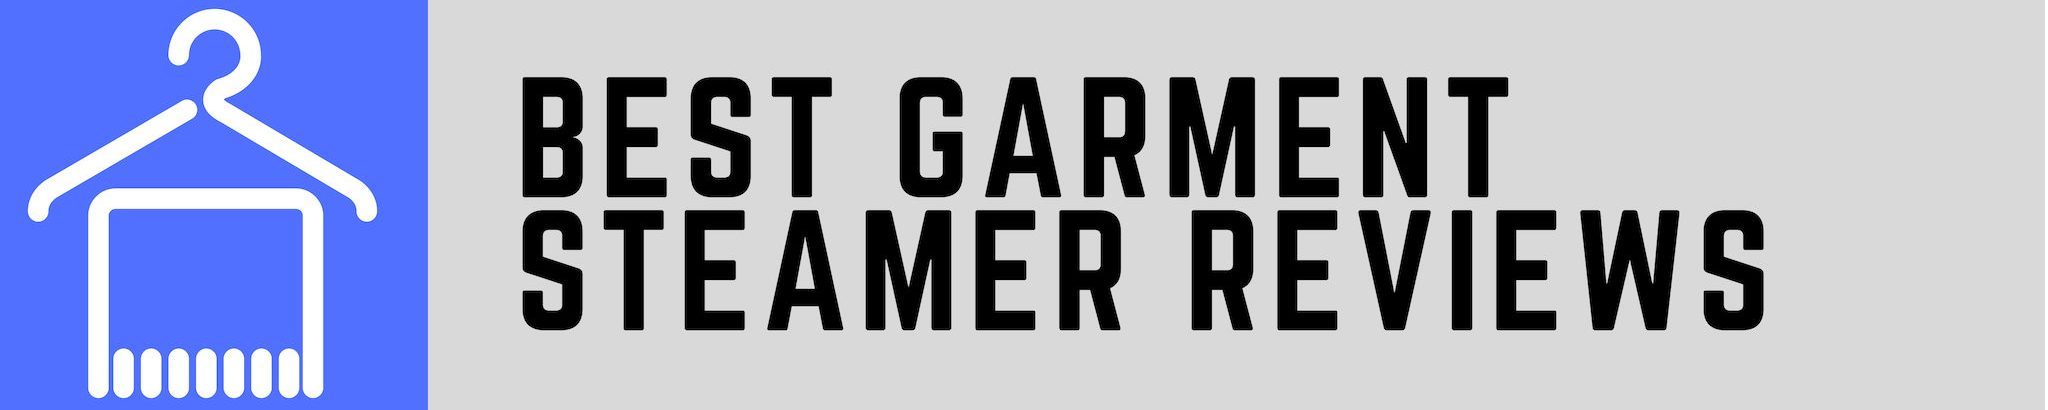 Best Garment Steamer Reviews